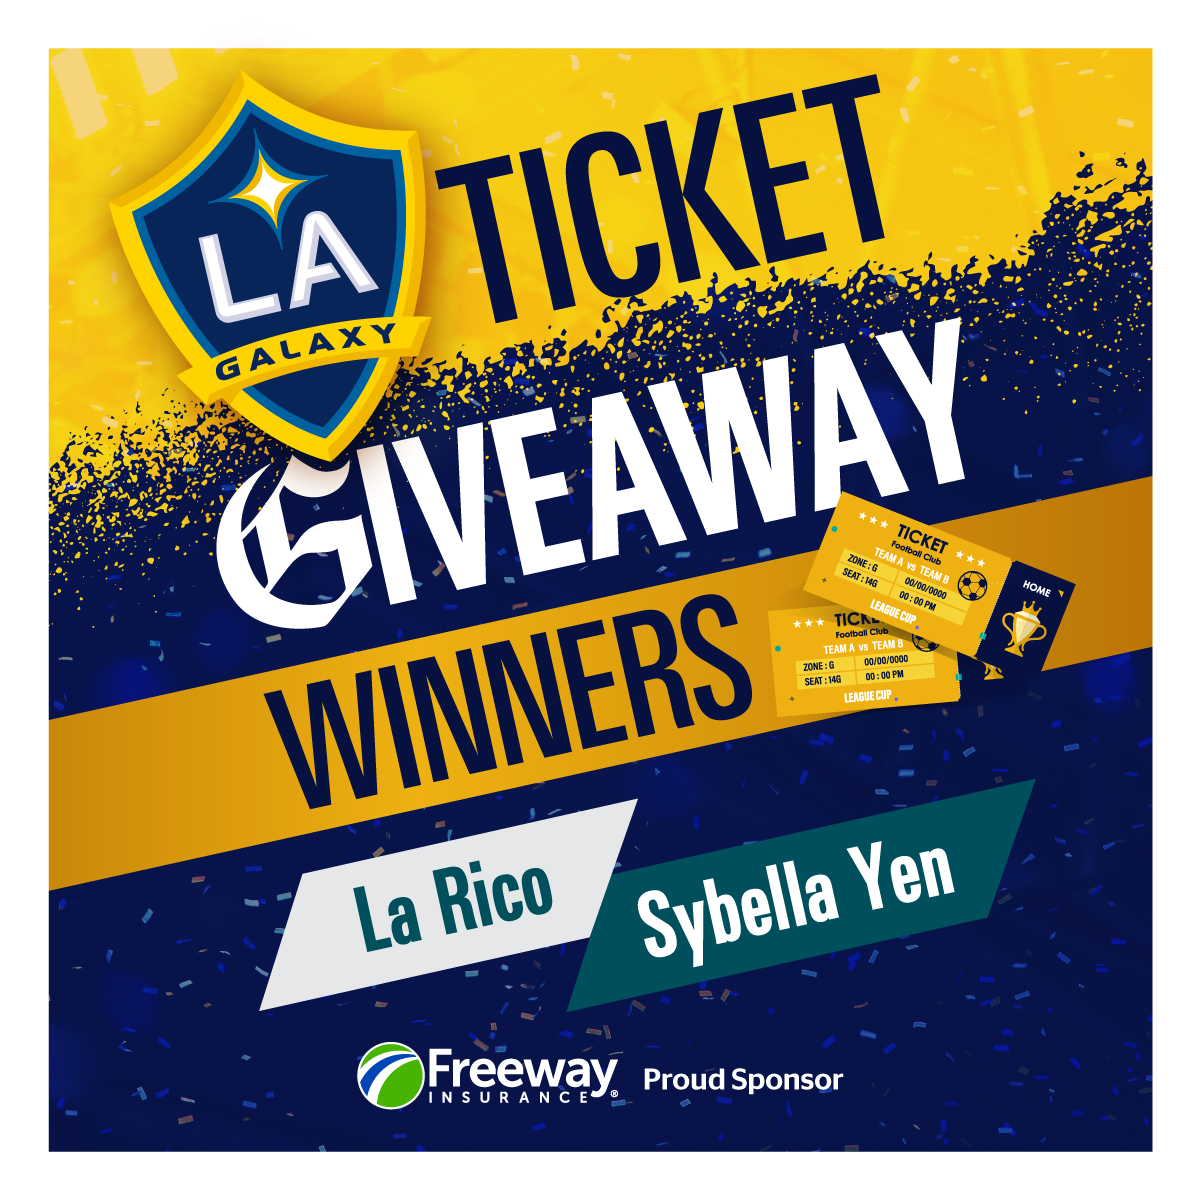 Ticket giveaway - winners: La Rico, Sybella Yen